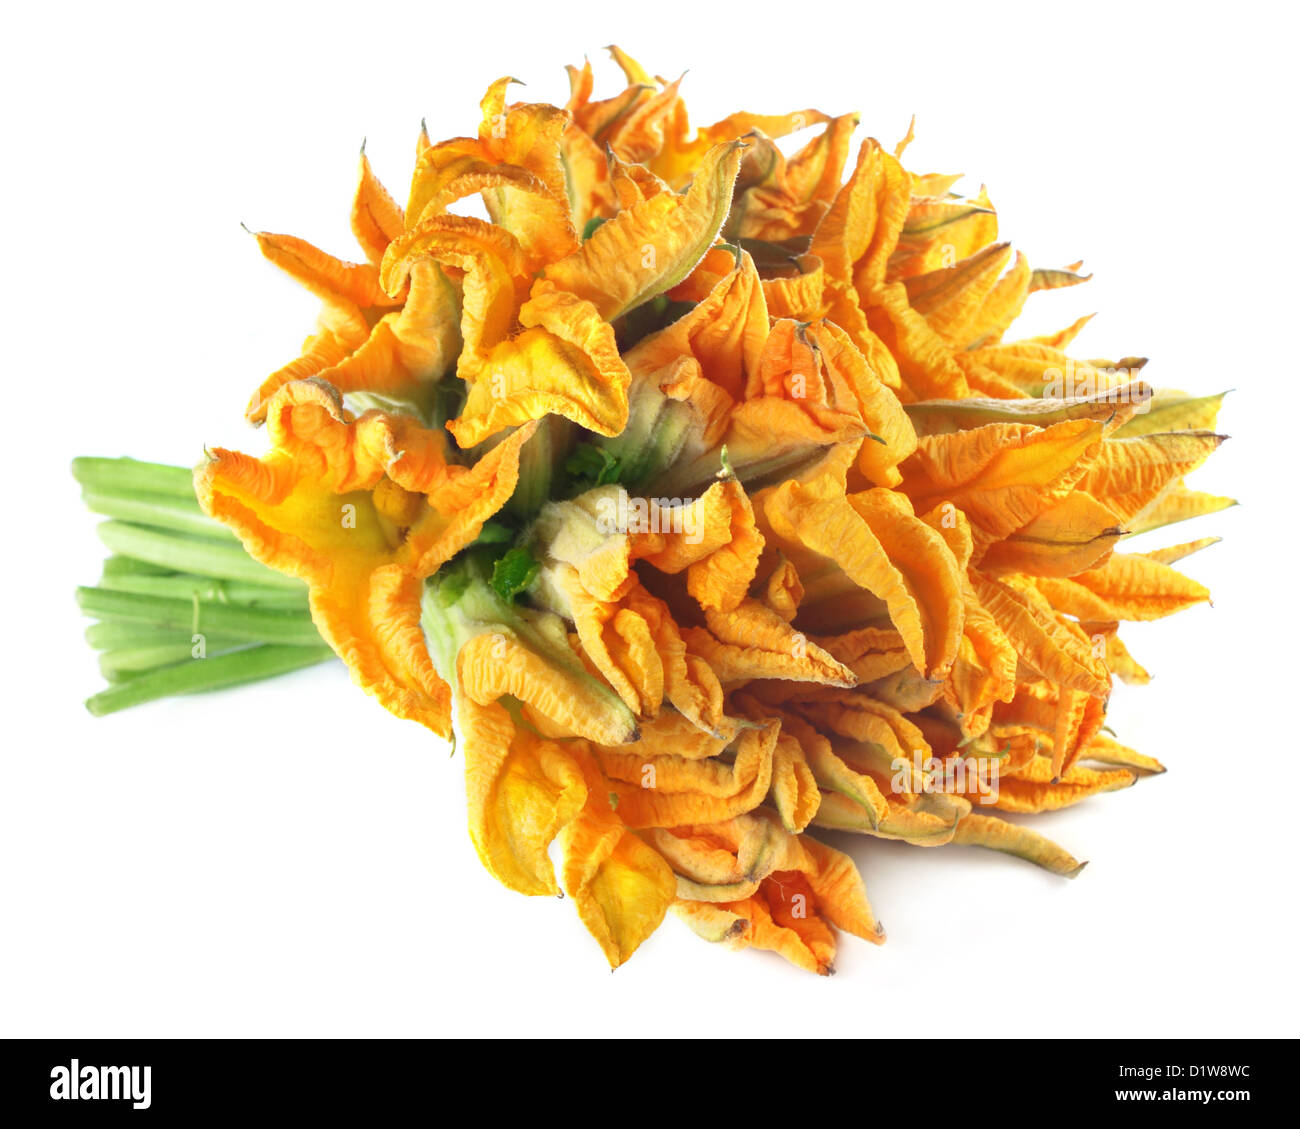 Edible pumpkin flower Stock Photo